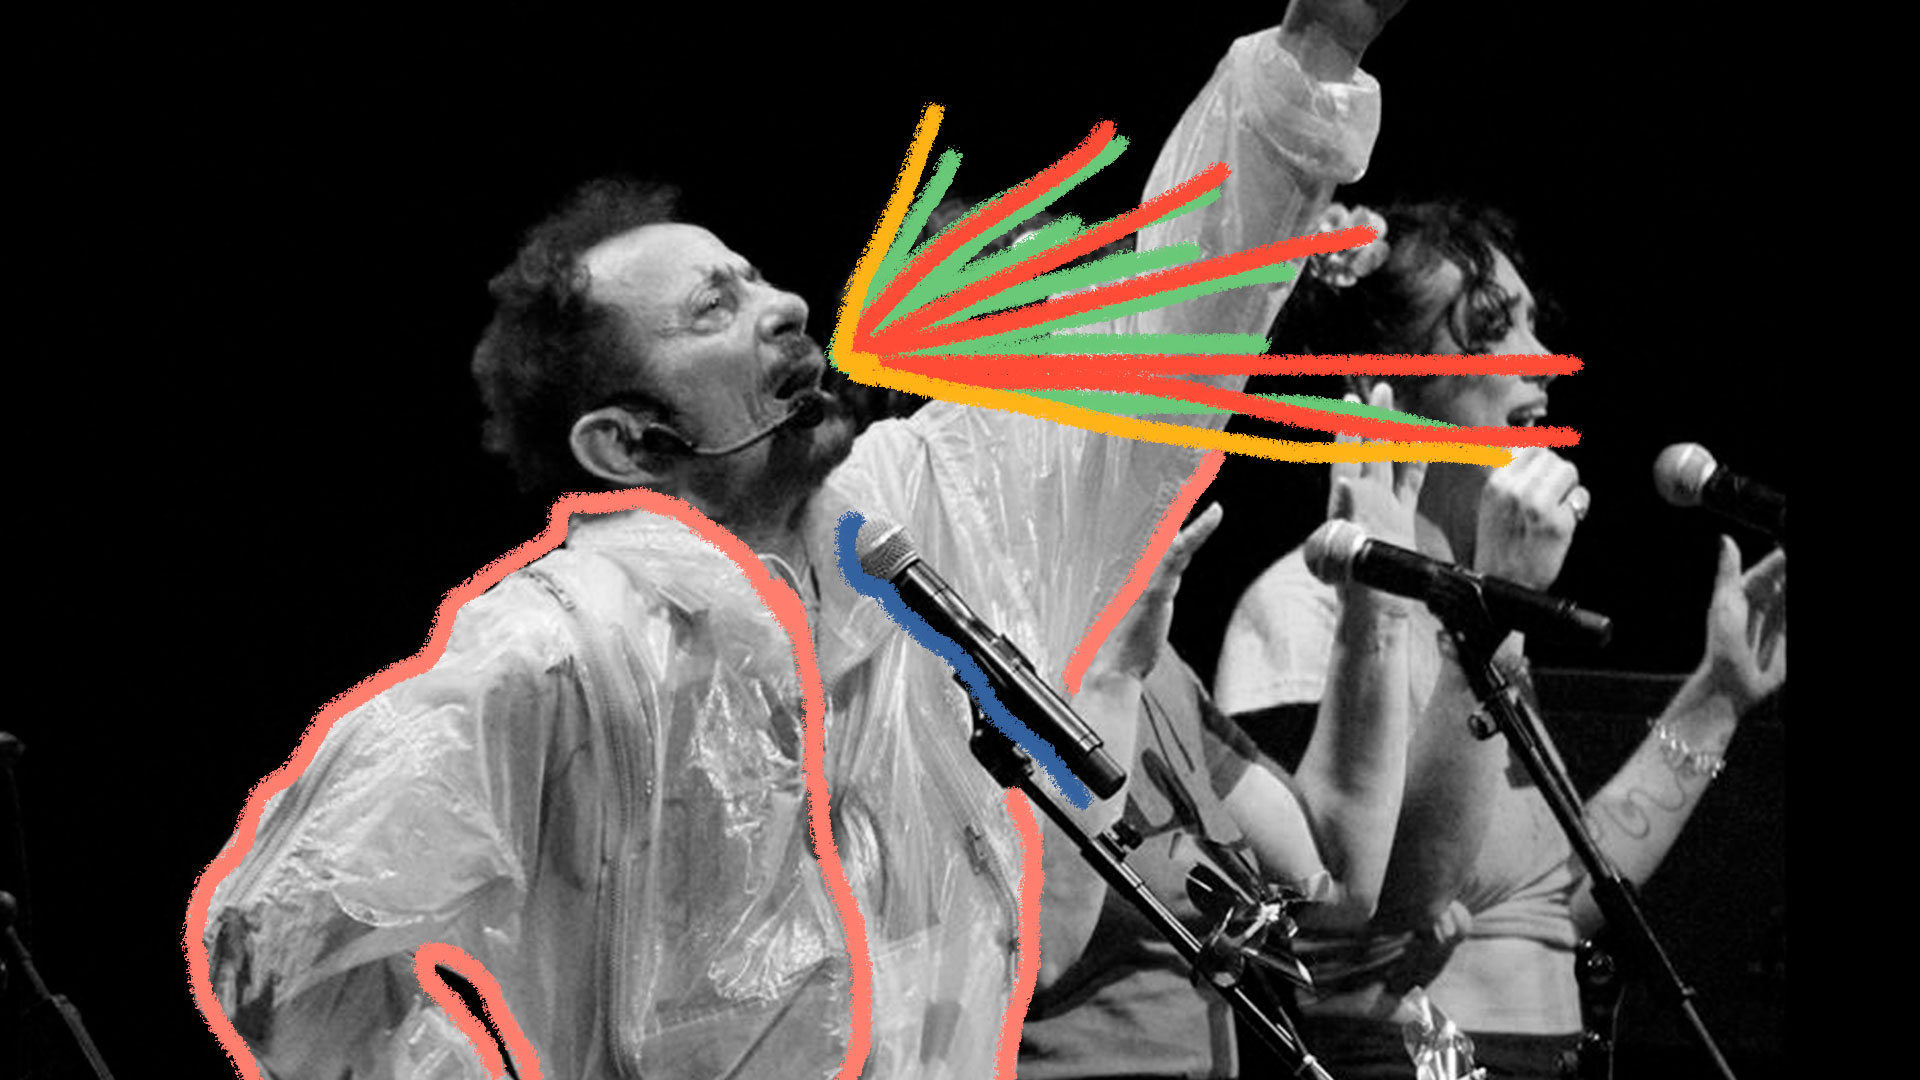 Foto em preto e branco mostra Tom Zé cantando em um show enquanto olha para a mão esquerda, que está levantada.